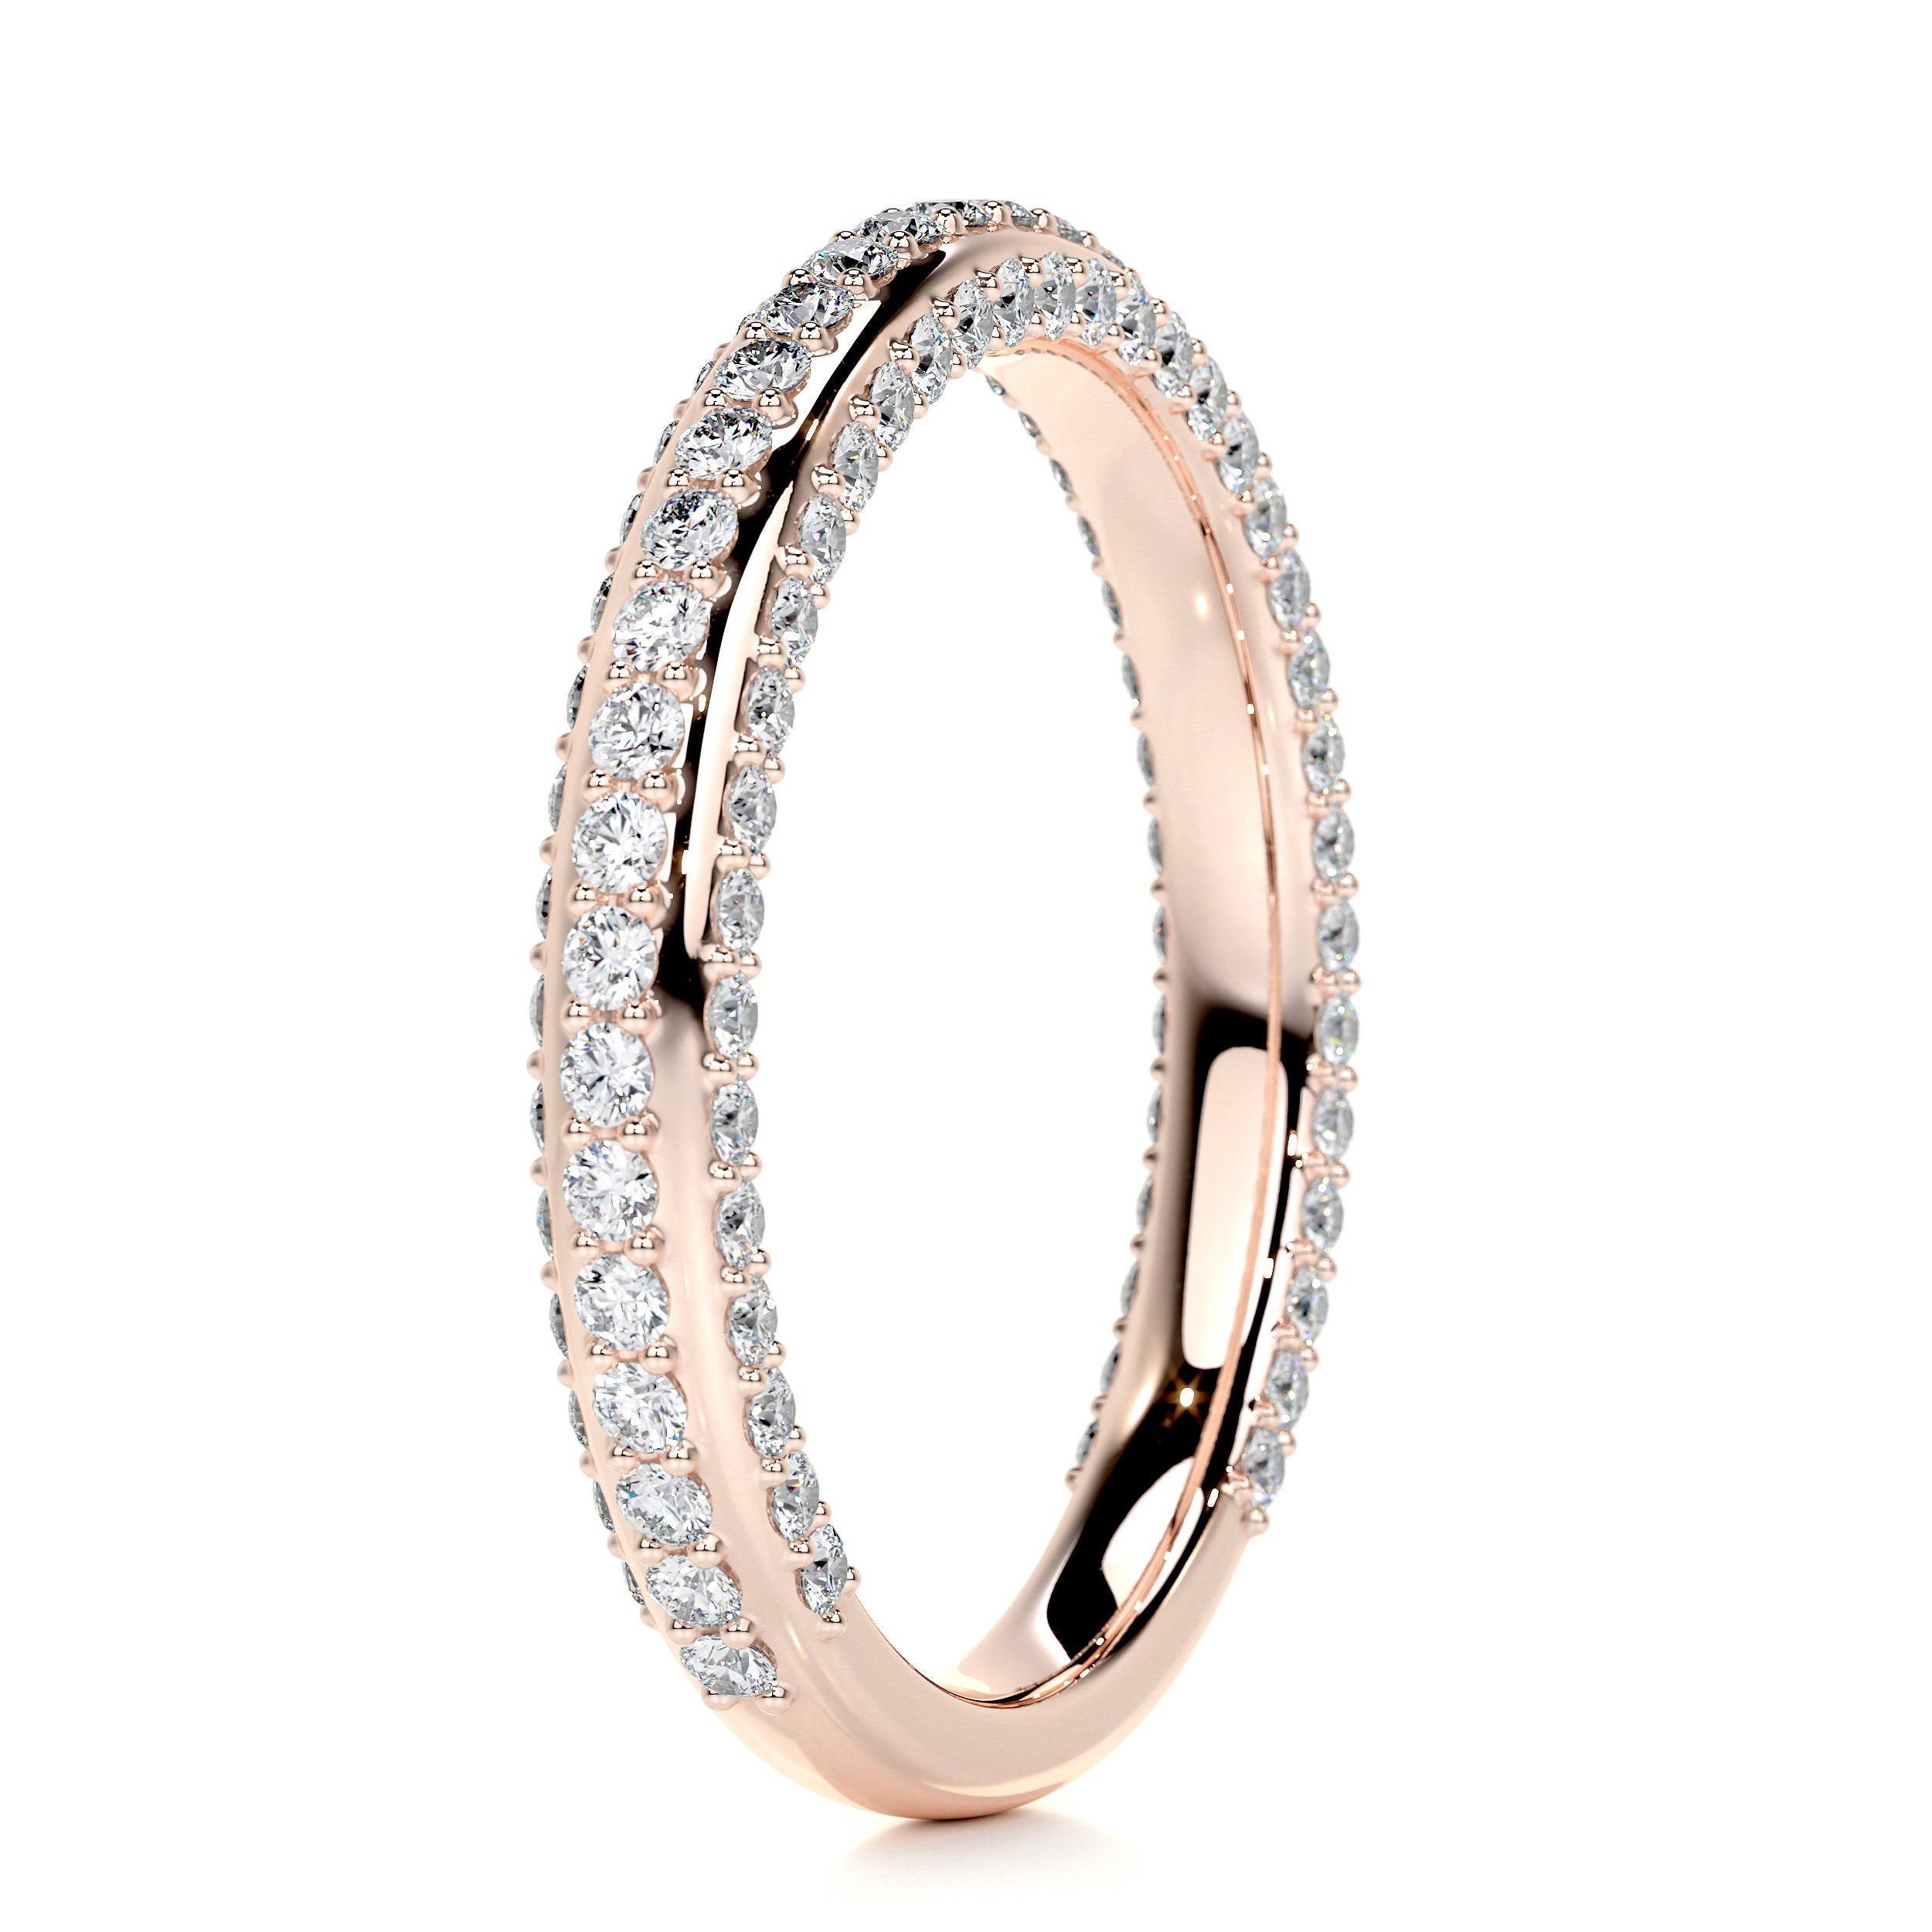 Anastasia Diamond Wedding Ring (0.75 Carat) - 14K Rose Gold